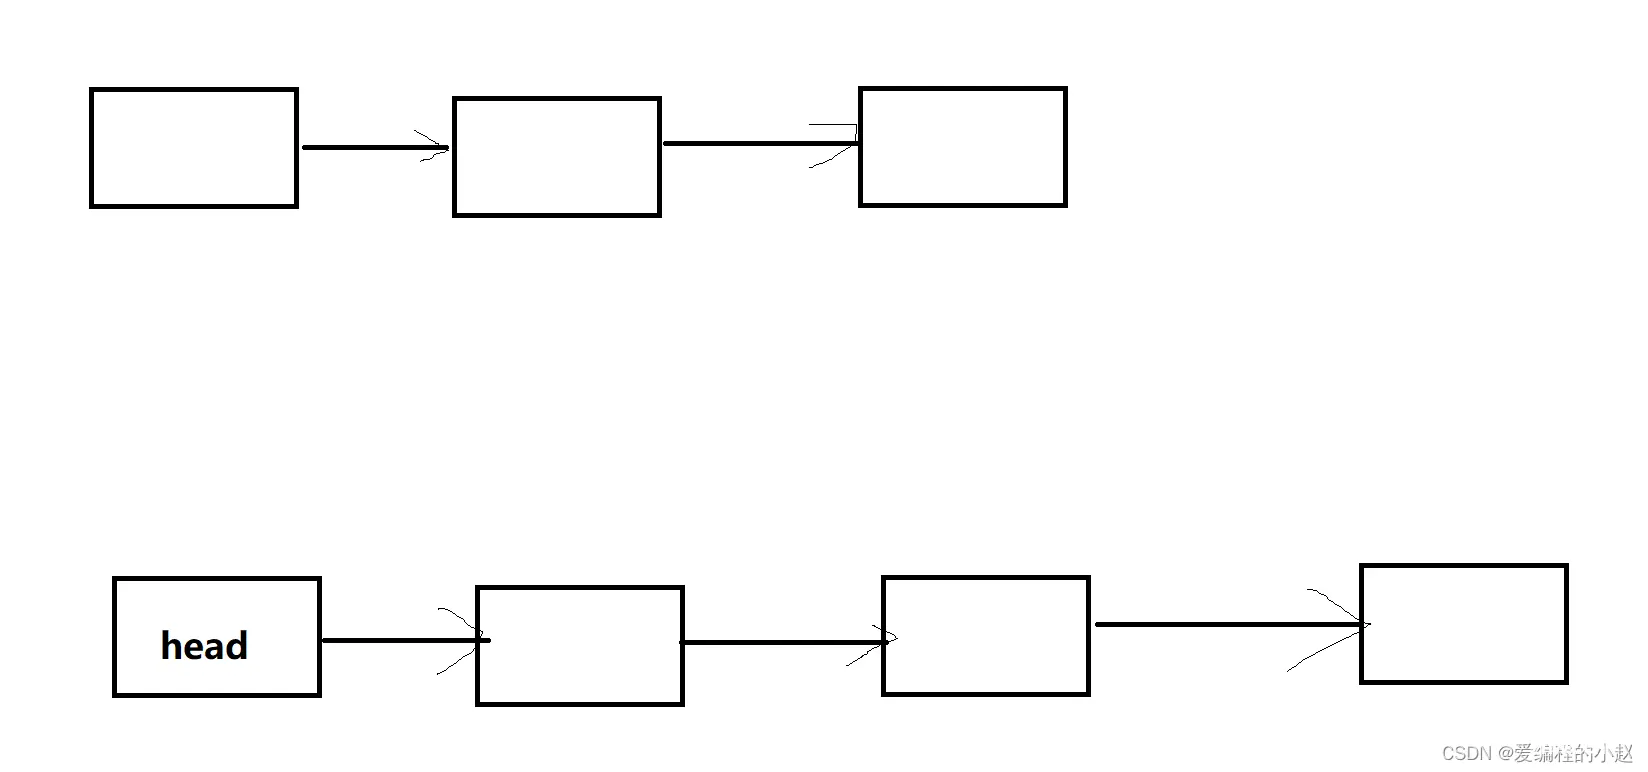 数据结构(C):玩转链表